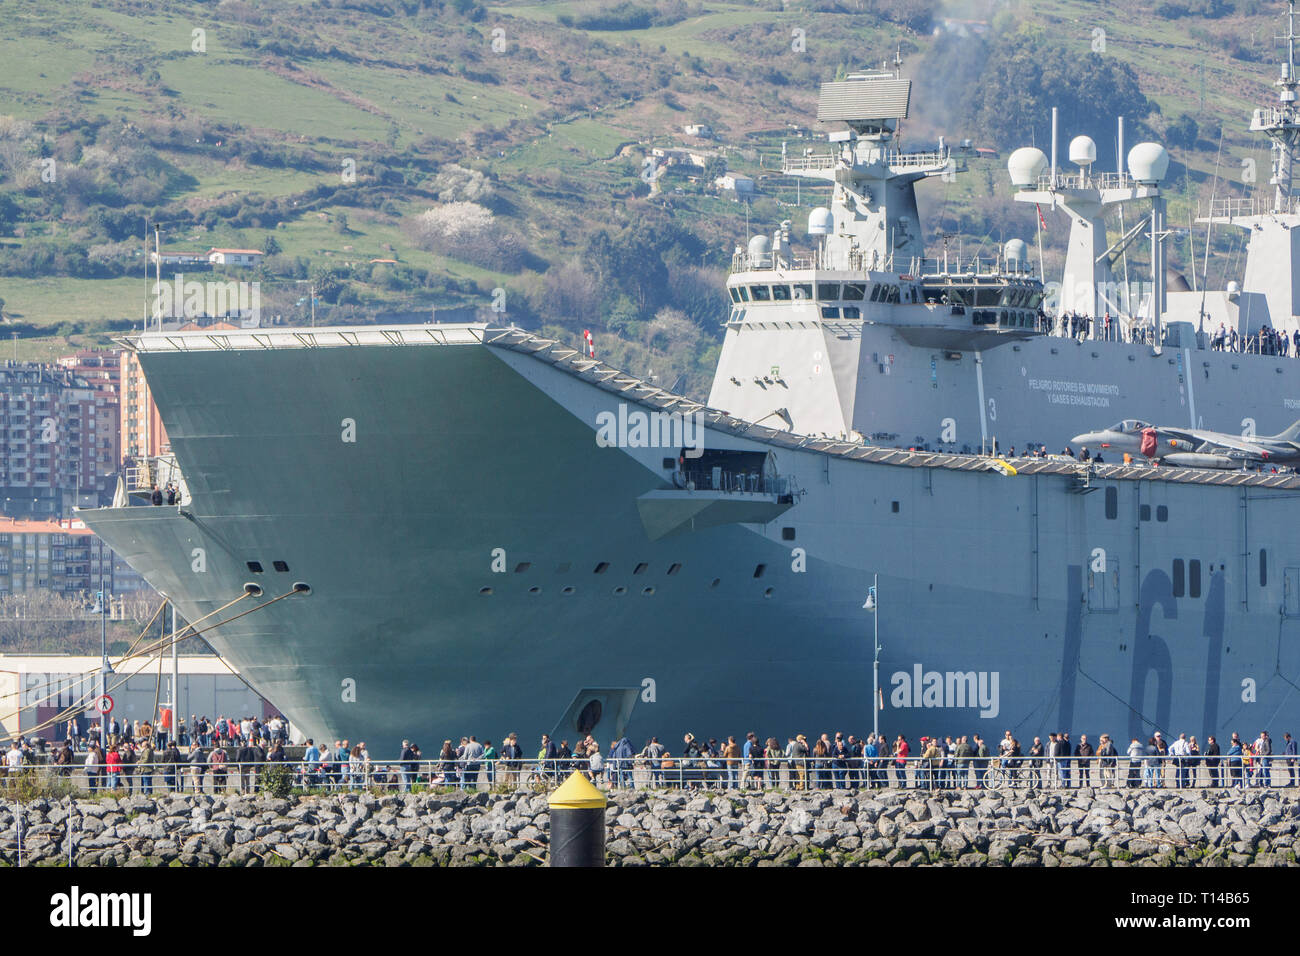 BILBAO, SPANIEN - MÄRZ/23/2019. Die Flugzeugträger der spanischen Marine  Juan Carlos I im Hafen von Bilbao, Tag der offenen Tür das Schiff zu  besuchen Stockfotografie - Alamy